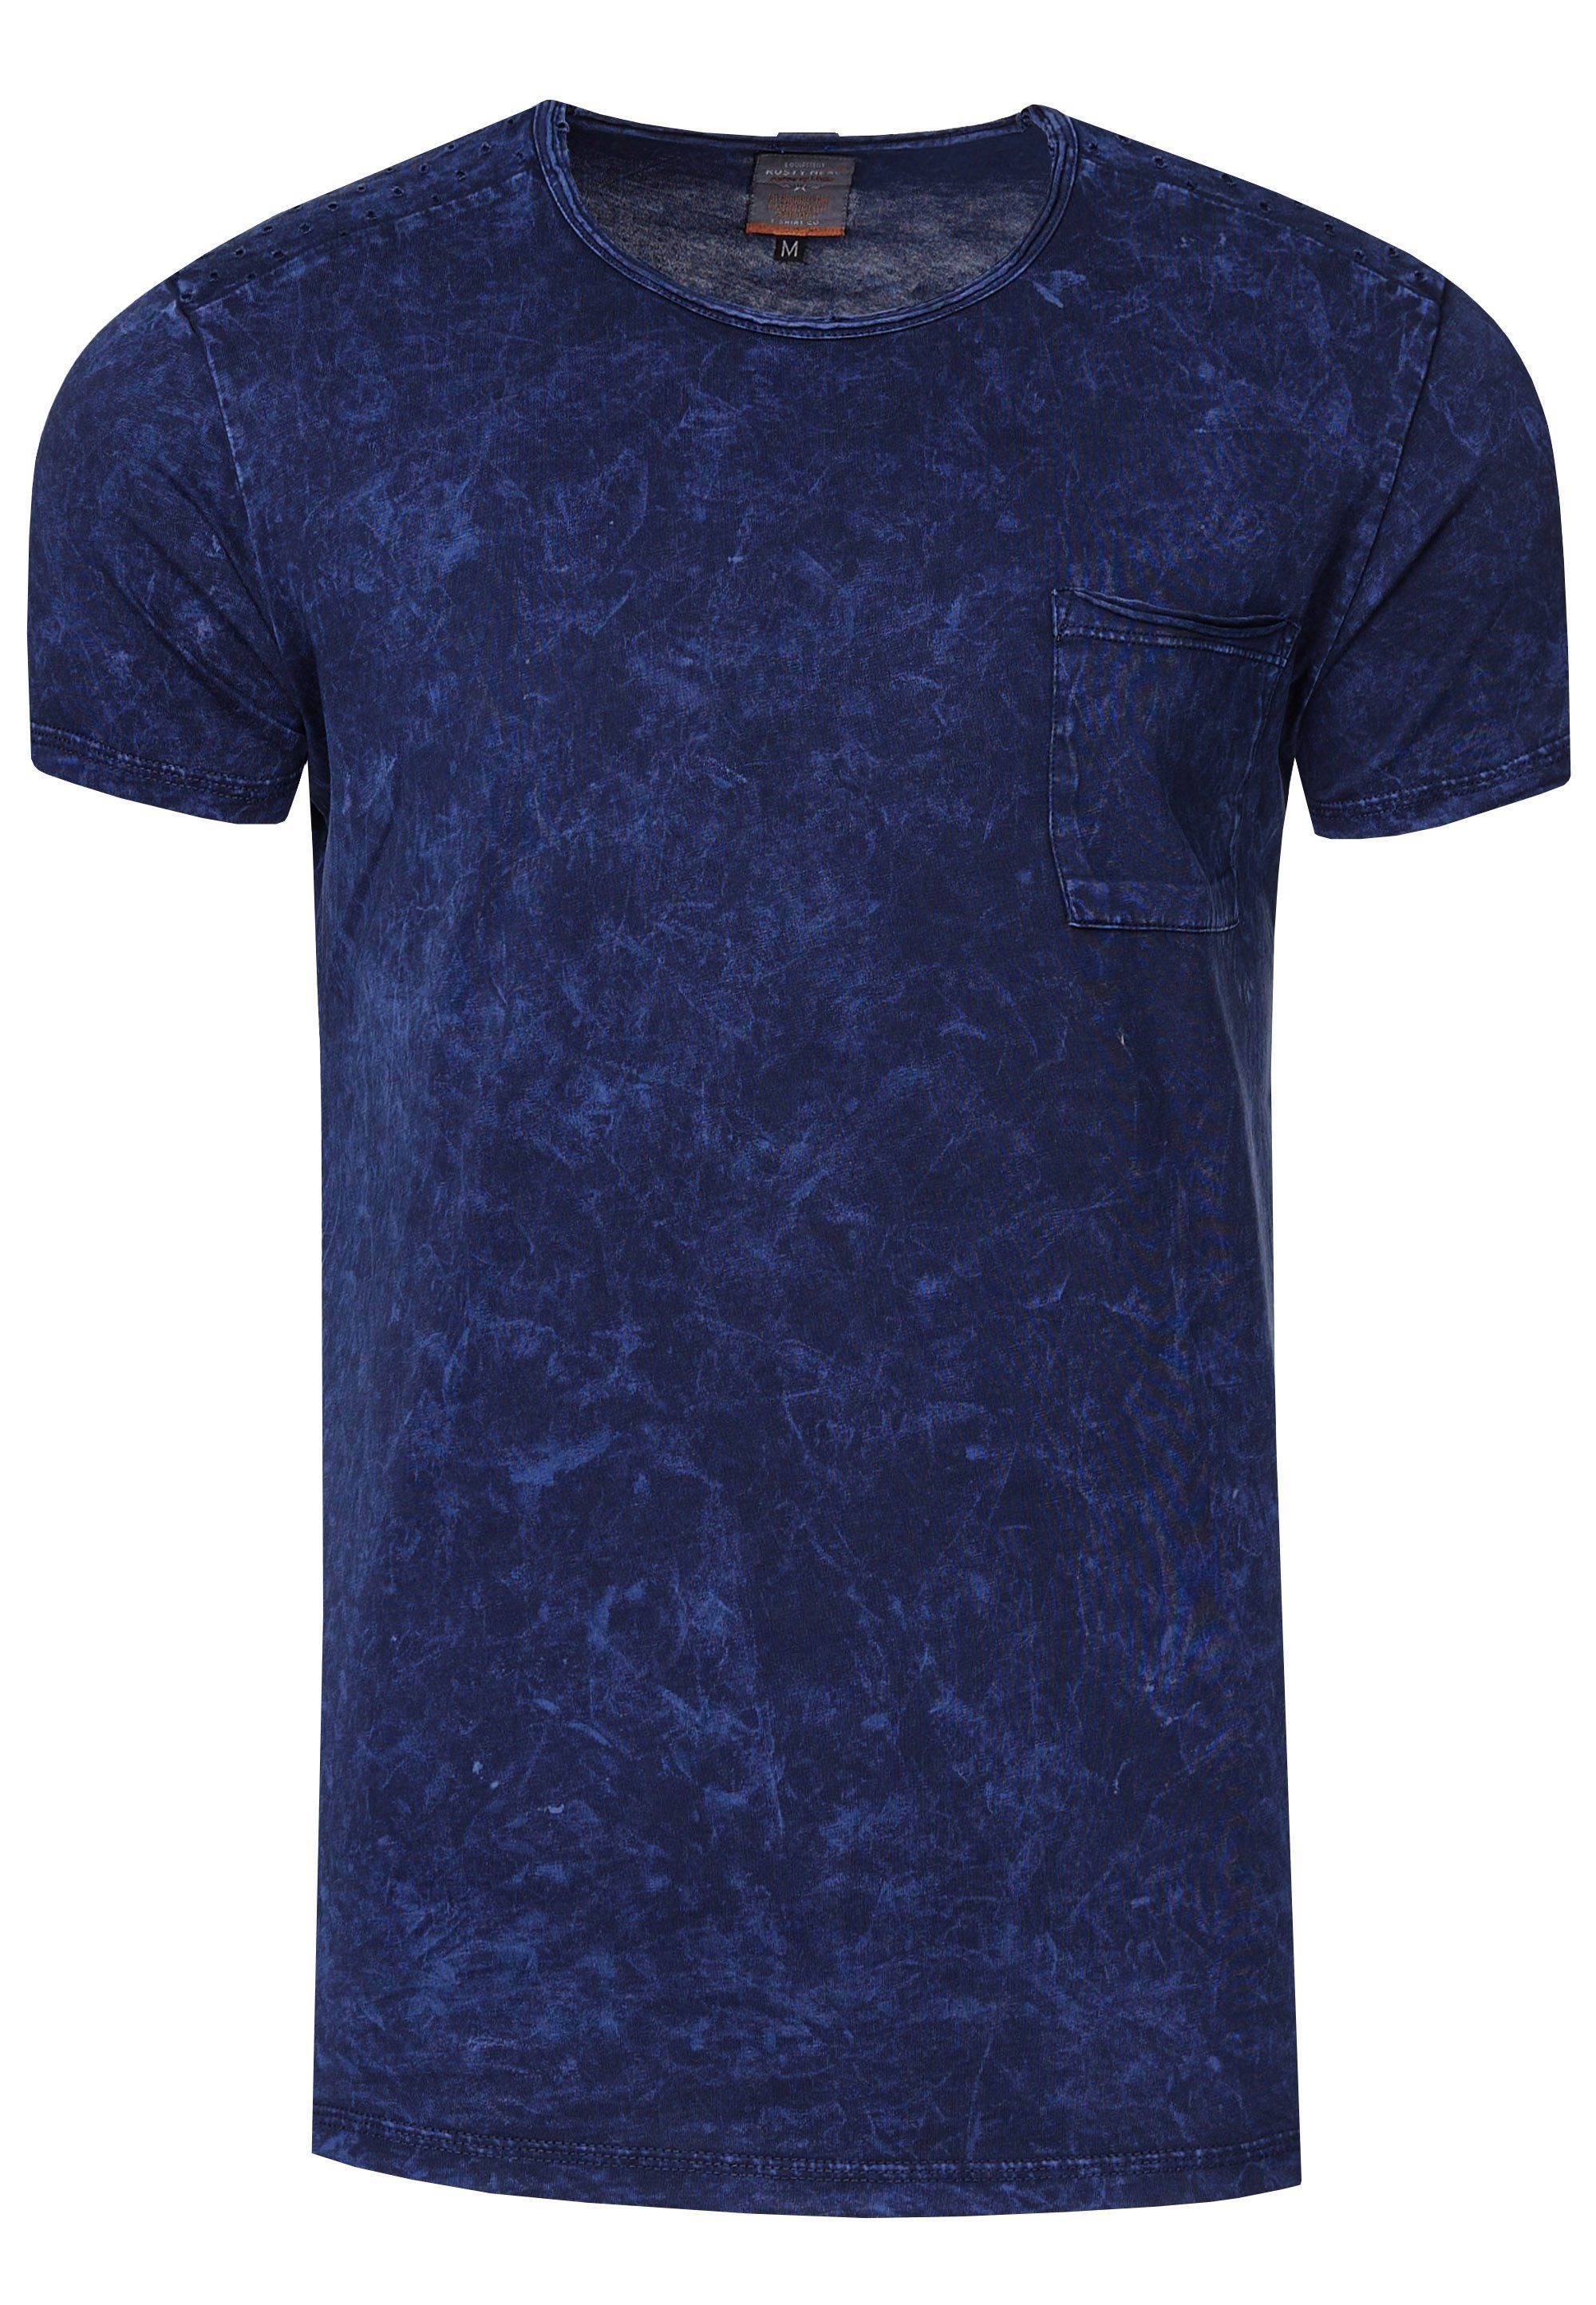 Rusty Neal T-Shirt und dunkelblau mit Musterung toller Brusttasche